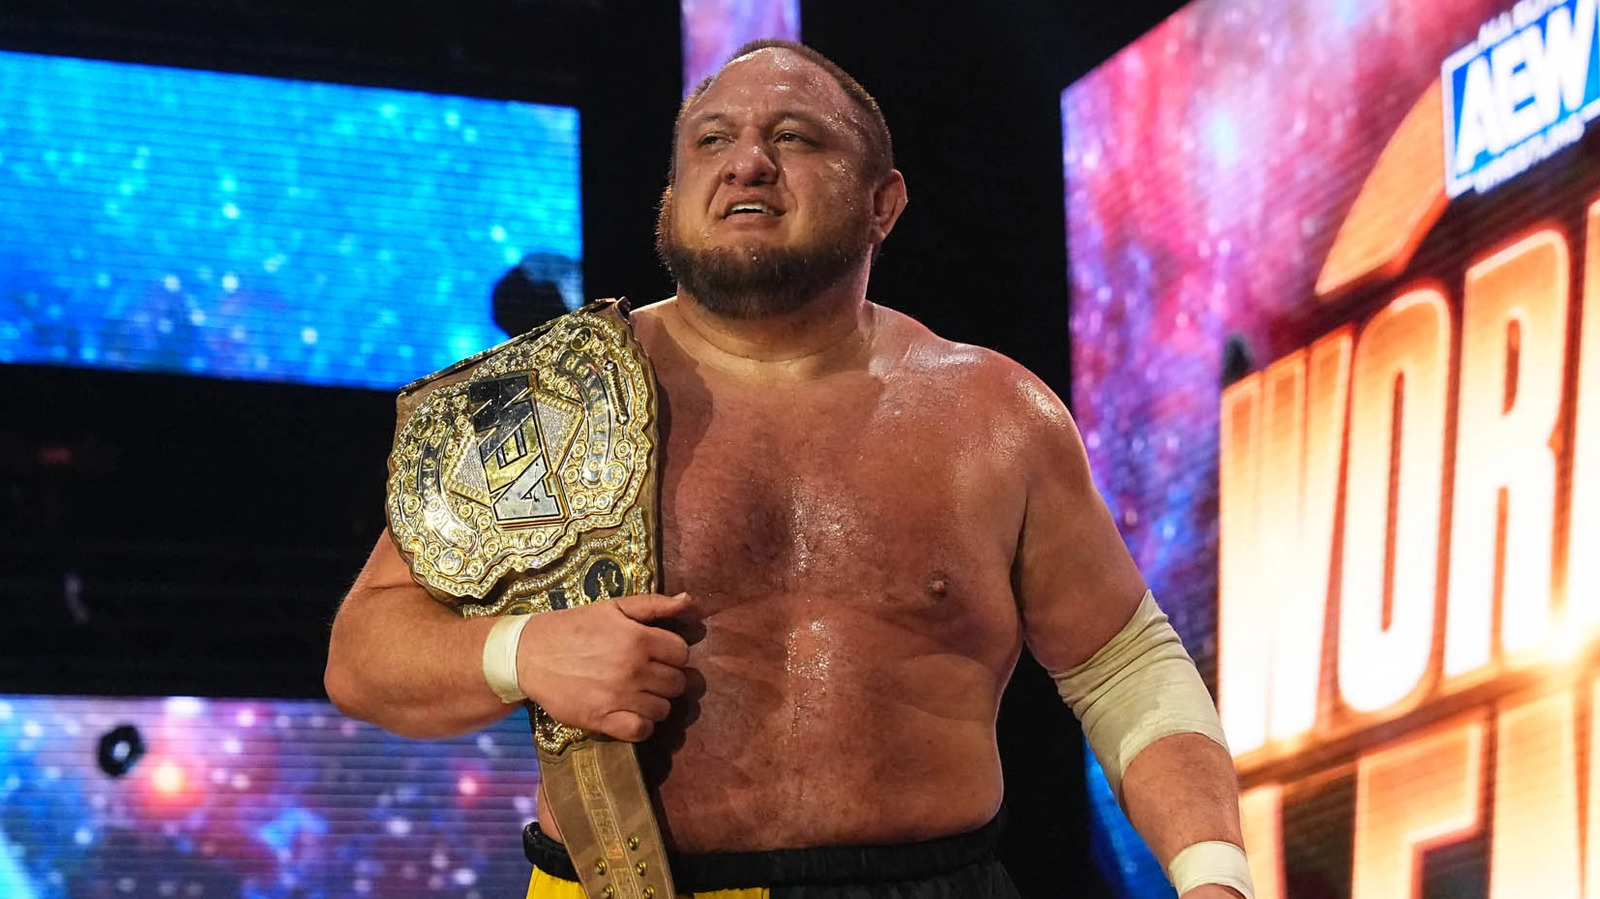 Swerve Strickland, otros contendientes se enfrentan al campeón mundial de AEW Samoa Joe en dinamita